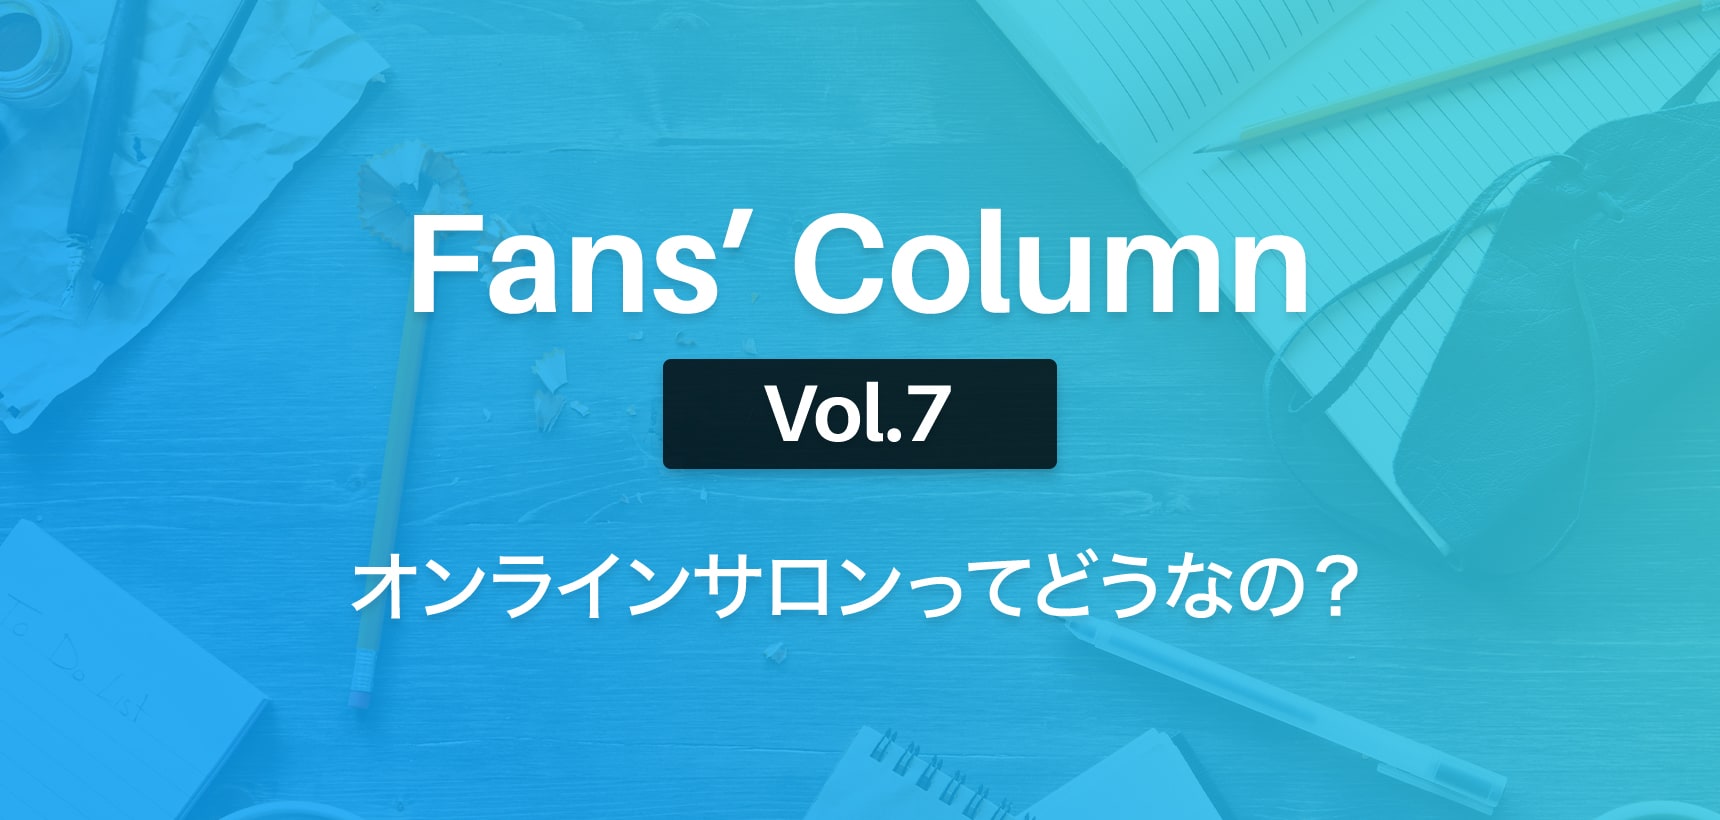 Fans’ Column | ファンズコラム Vol.7 オンラインサロンを「副業」にするのって、ぶっちゃけどうなの？